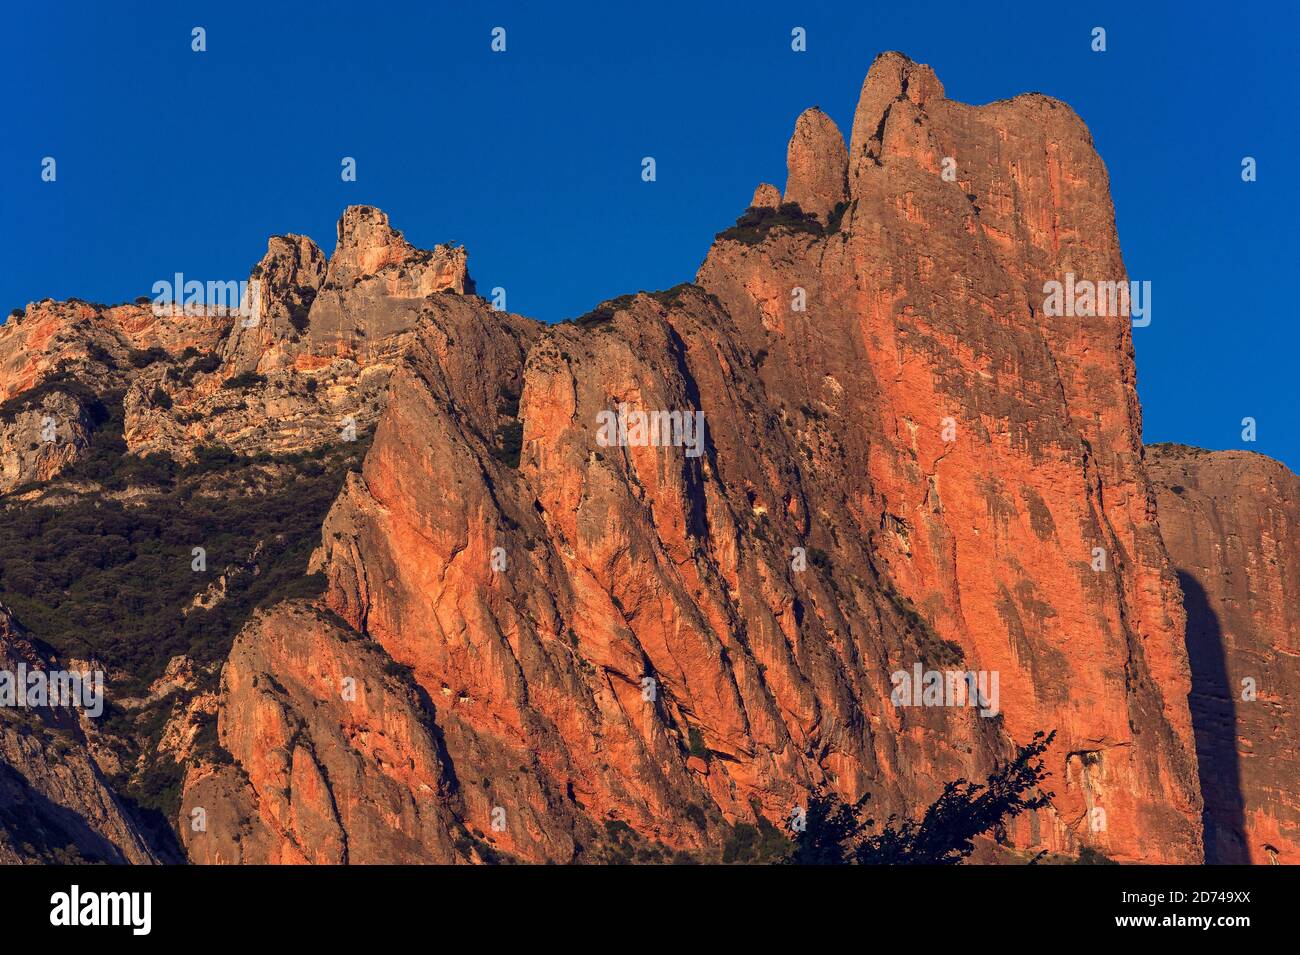 Der majestätische Mallos de Riglos, ein spektakuläres natürliches Tor zu den Pyrenäen, leuchtet in der Abendsonne in der Provinz Huesca, Aragon, Spanien, leuchtend orange-rot. Los Mallos (die Mallets) entstand vor mindestens 20 Millionen Jahren, als Material von den Pyrenäenhängen mit Kalkstein verdichtet wurde, um Konglomeratgestein zu bilden. Die markanten ‘m, durch Erosion geformten „Allets“ bilden eine physische Grenze zwischen den Vorgebirgen der Pyrenäen und dem Ebro-Becken, die auf etwa 300 m (980 ft) ansteigt. Im 11. Jahrhundert war die Gegend um Mallos kurz ein unabhängiges Königreich, nachdem Pedro, König von Aragon, es als Mitgift gab. Stockfoto